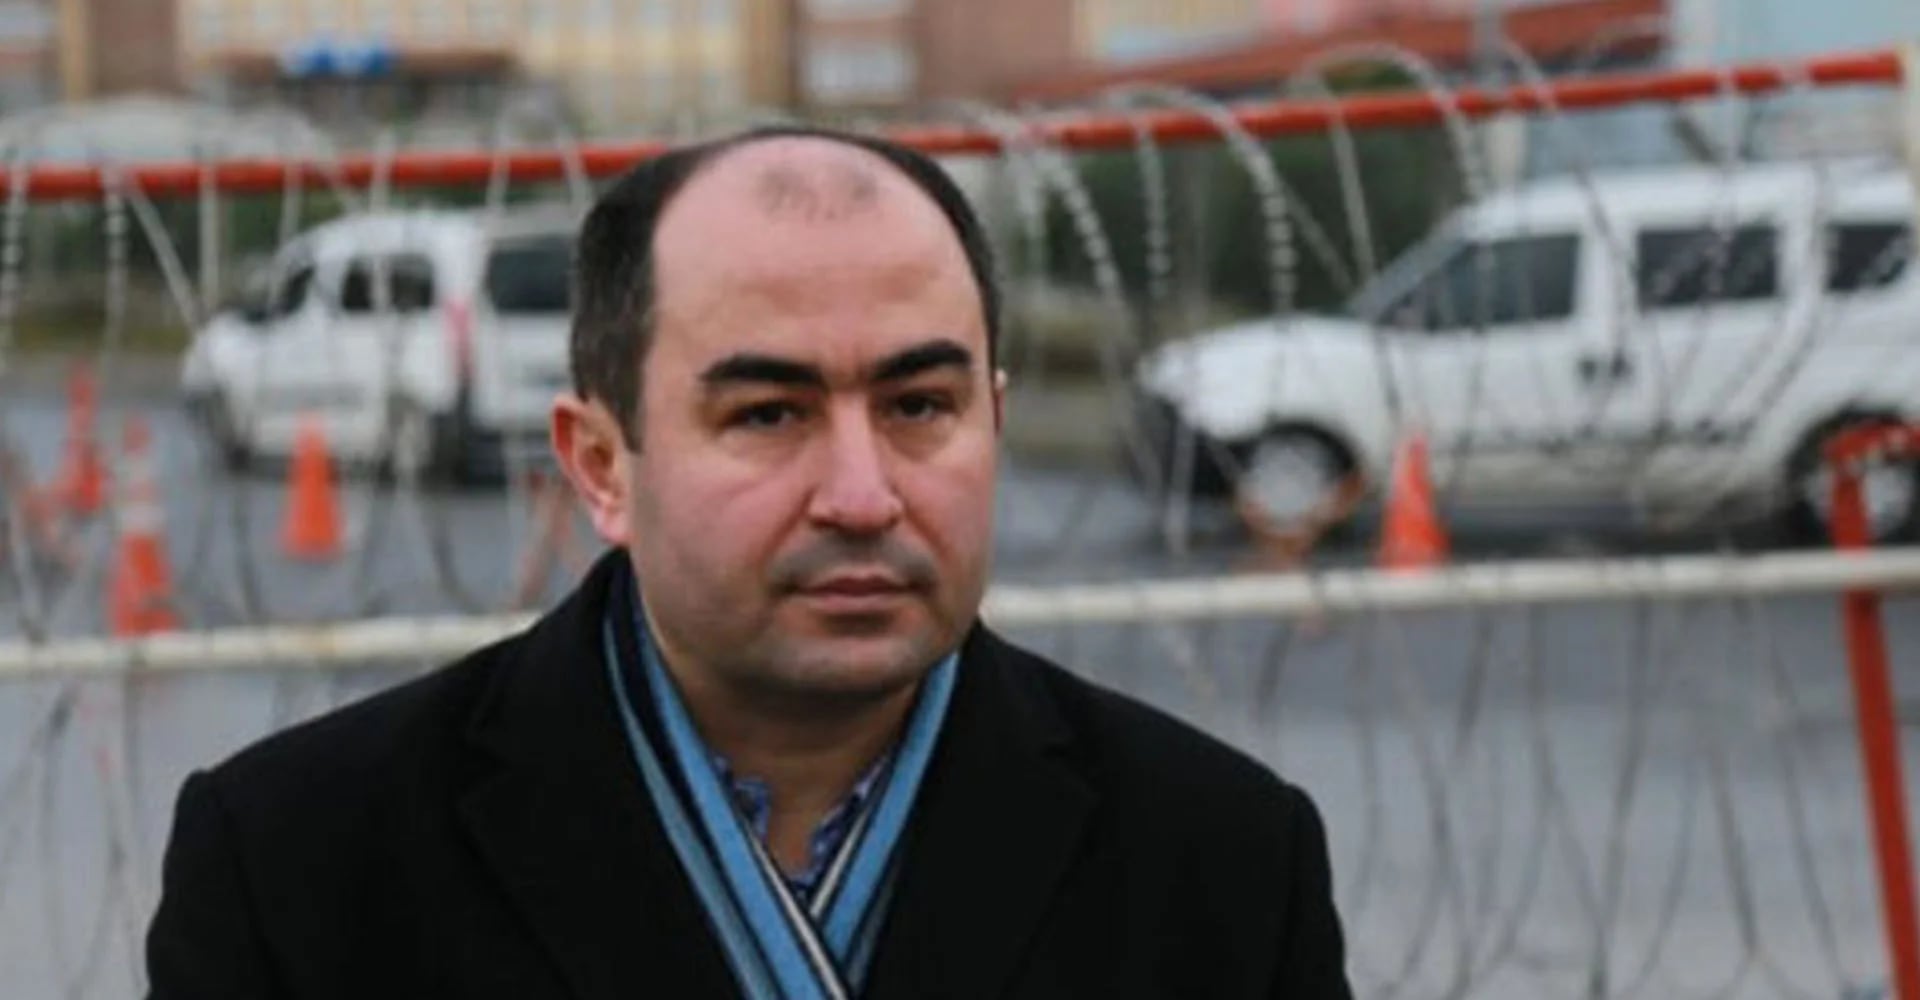 “Faruk Akkan. Tal vez el escritor más prolífico de Turquía. Hizo carrera con la presentación de informes de Moscú. Detenido” @MahirZeynalov